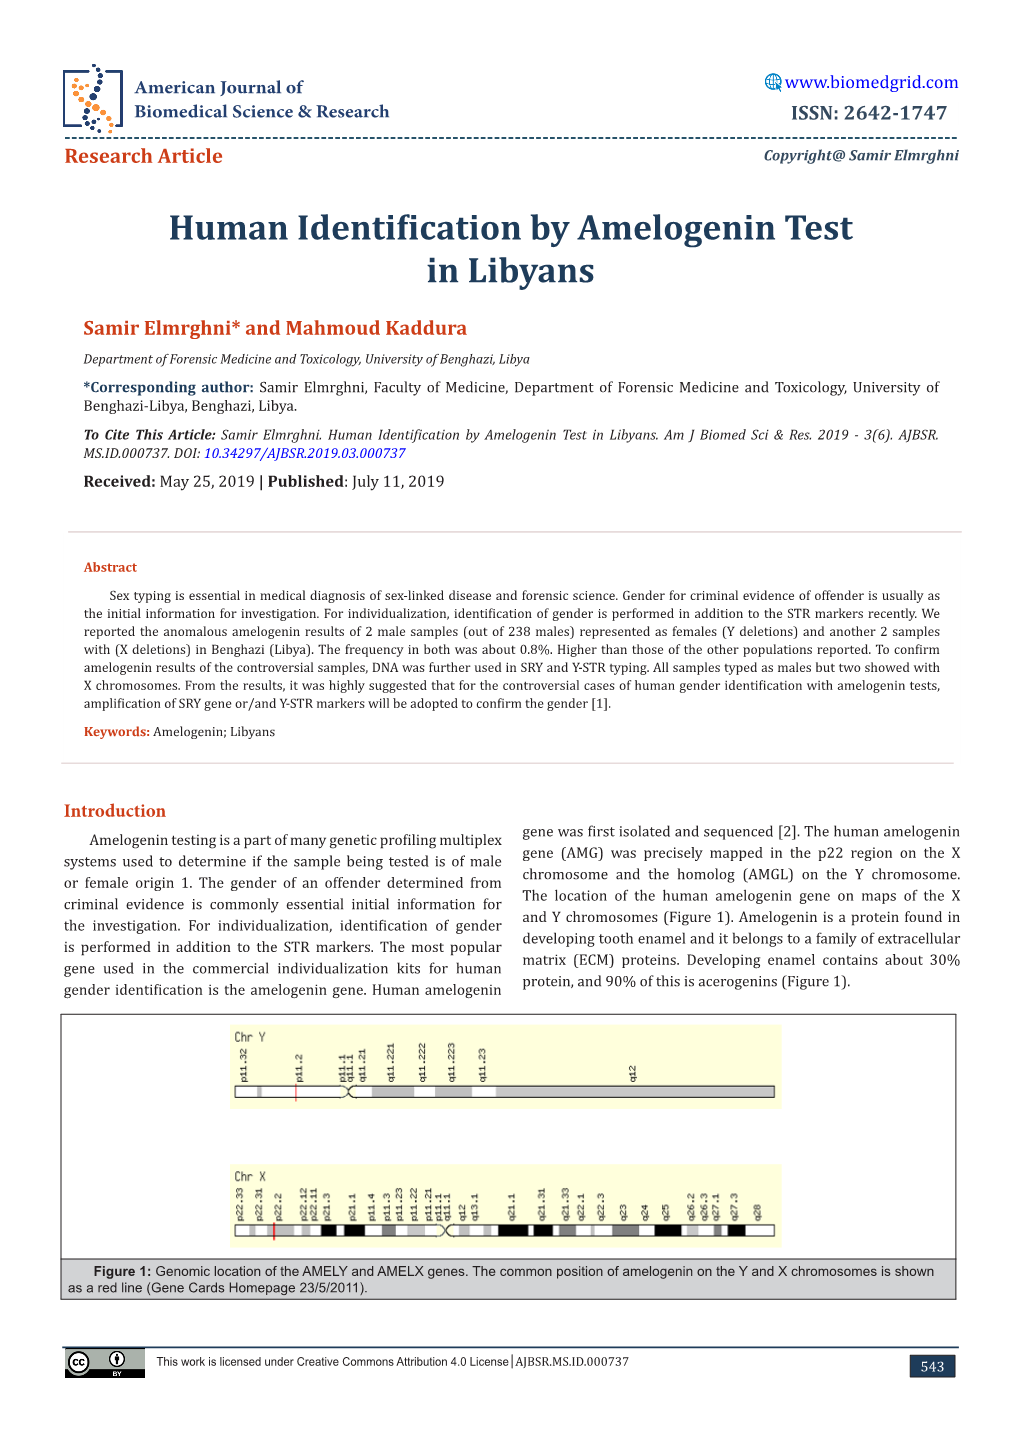 Human Identification by Amelogenin Test in Libyans